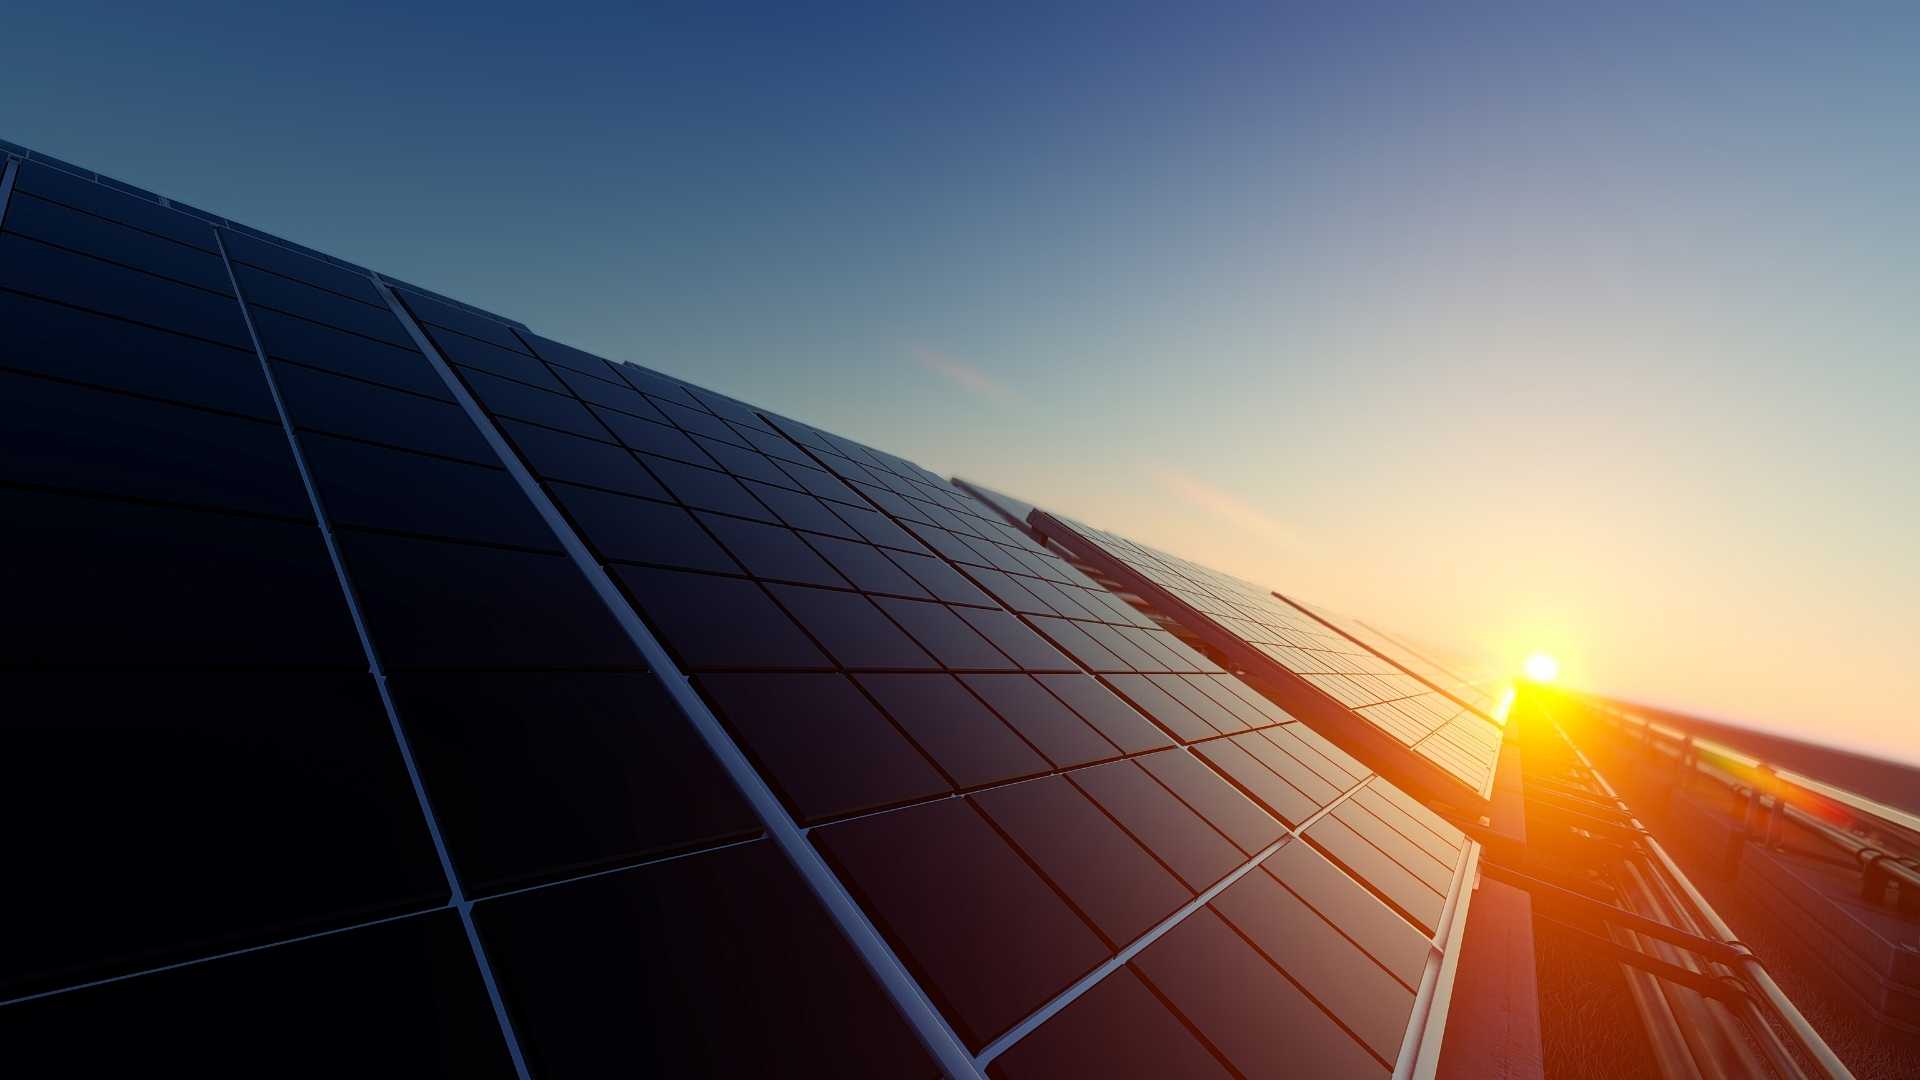 Öresundskraft stärker solmusklerna tecknar avtal med Kraftpojkarna 1